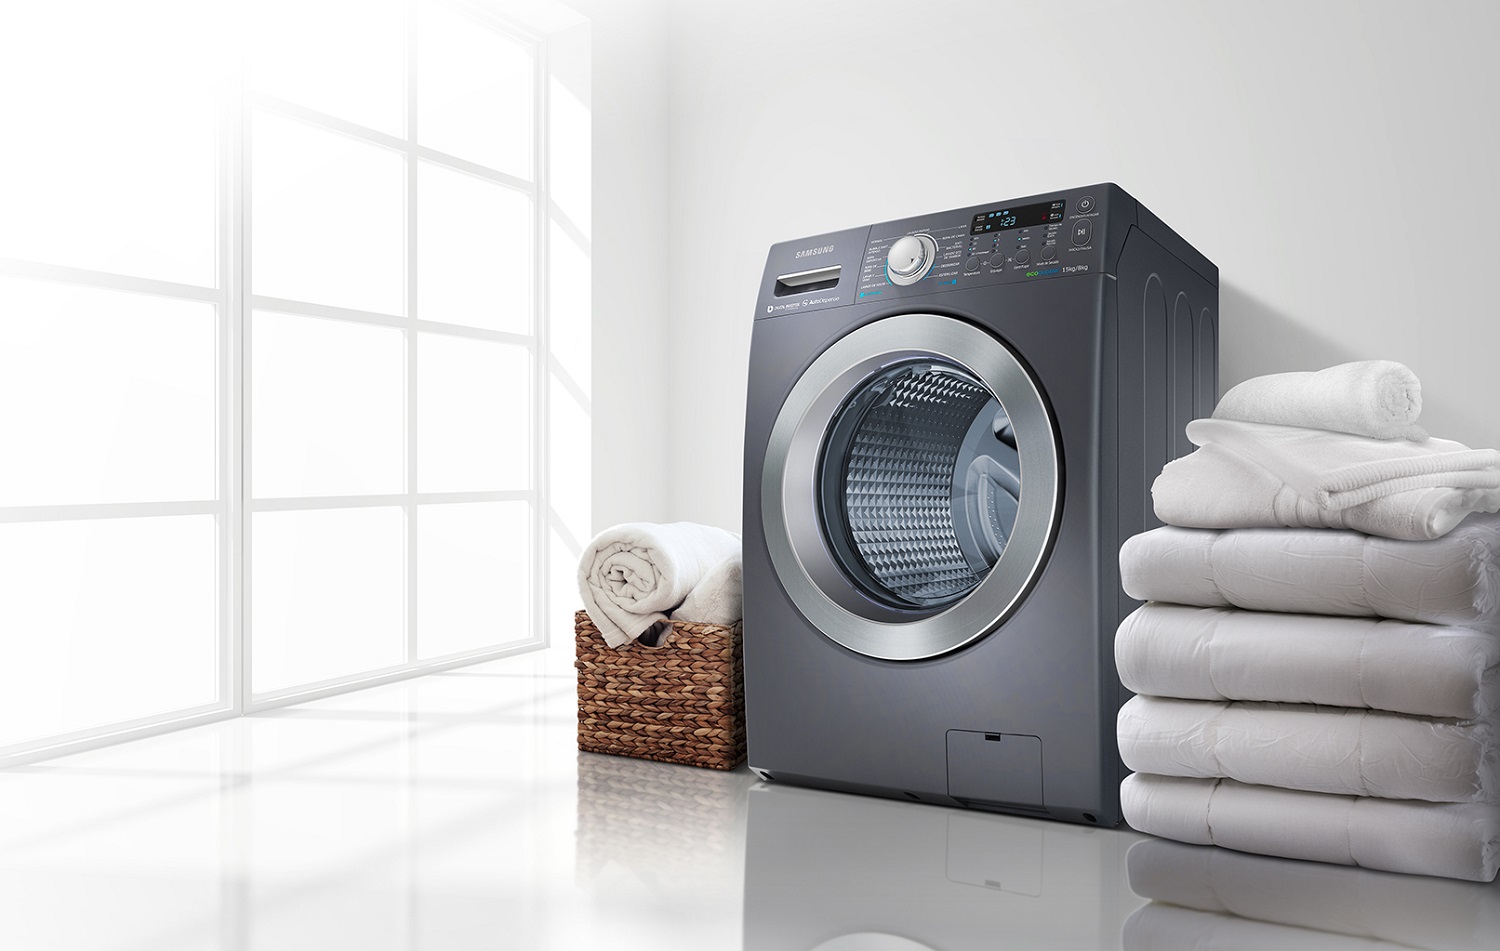 Kaip prailginti skalbimo mašinos tarnavimo laiką?